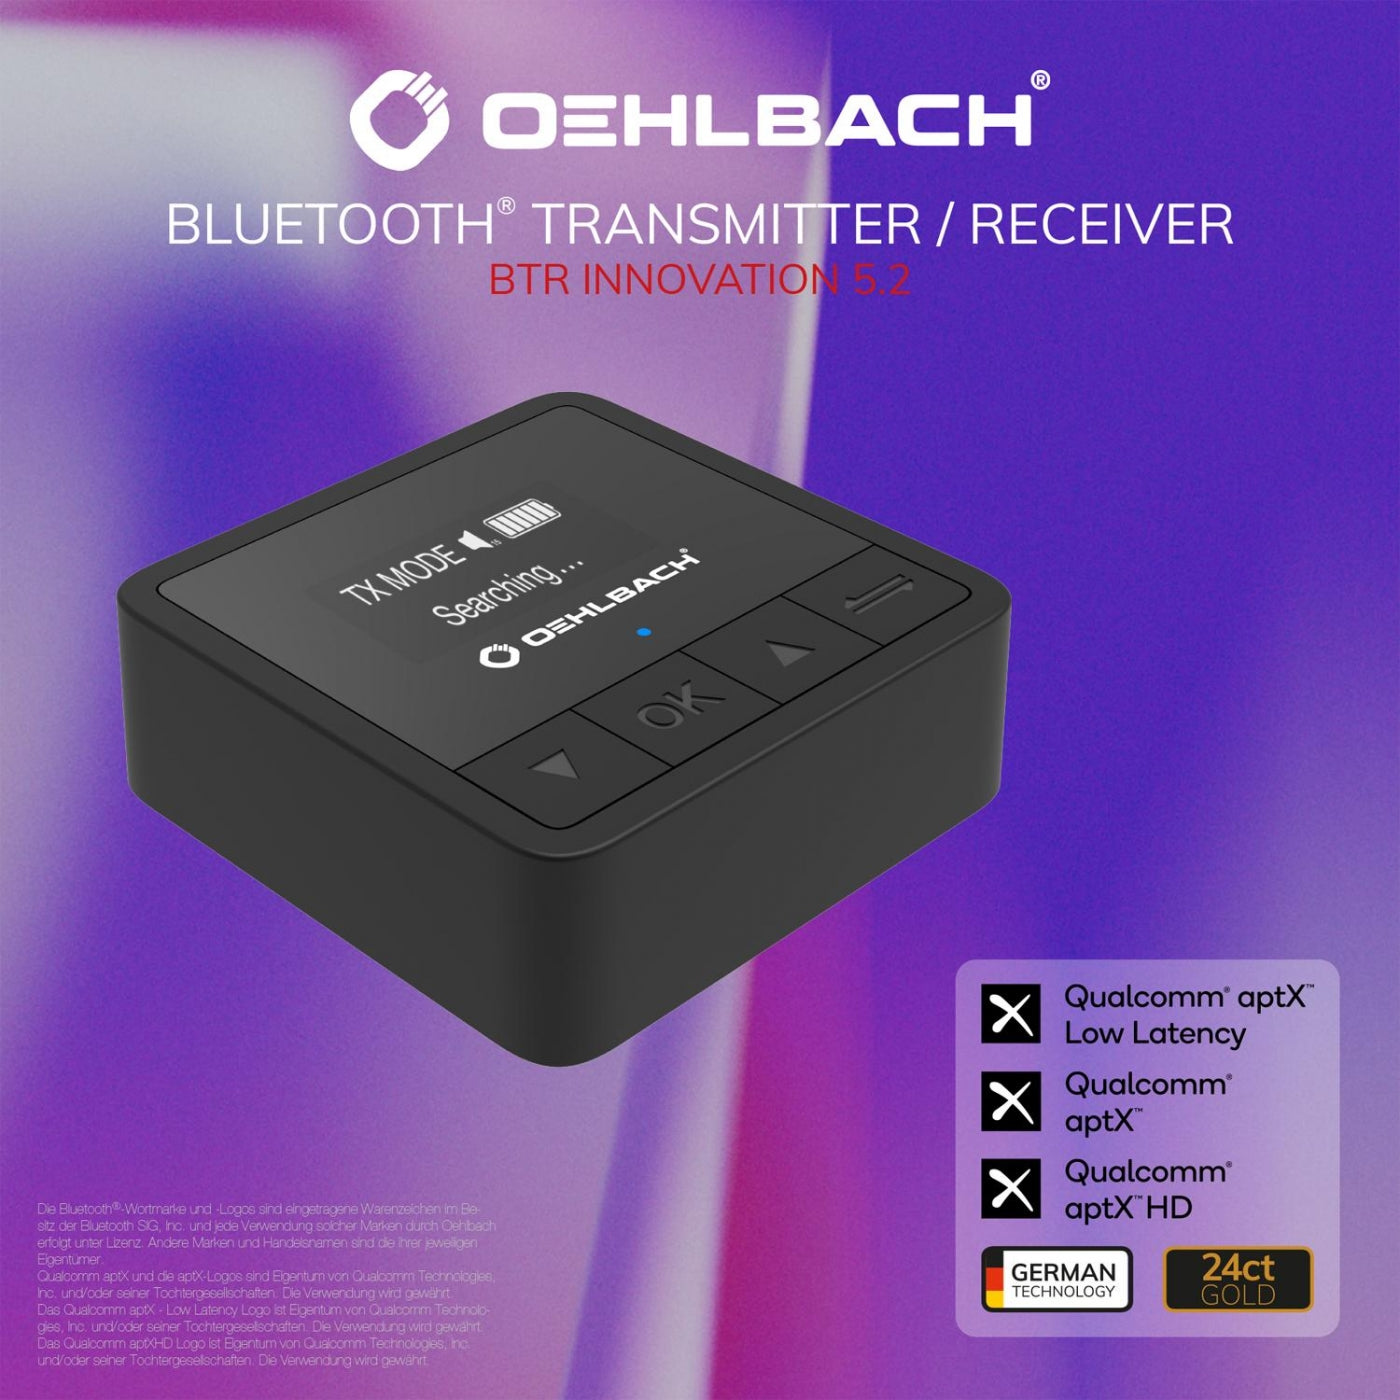 Oehlbach-OEHLBACH Art. No. 6054 BTR Innovation 5.2 Bluetooth TX/RX